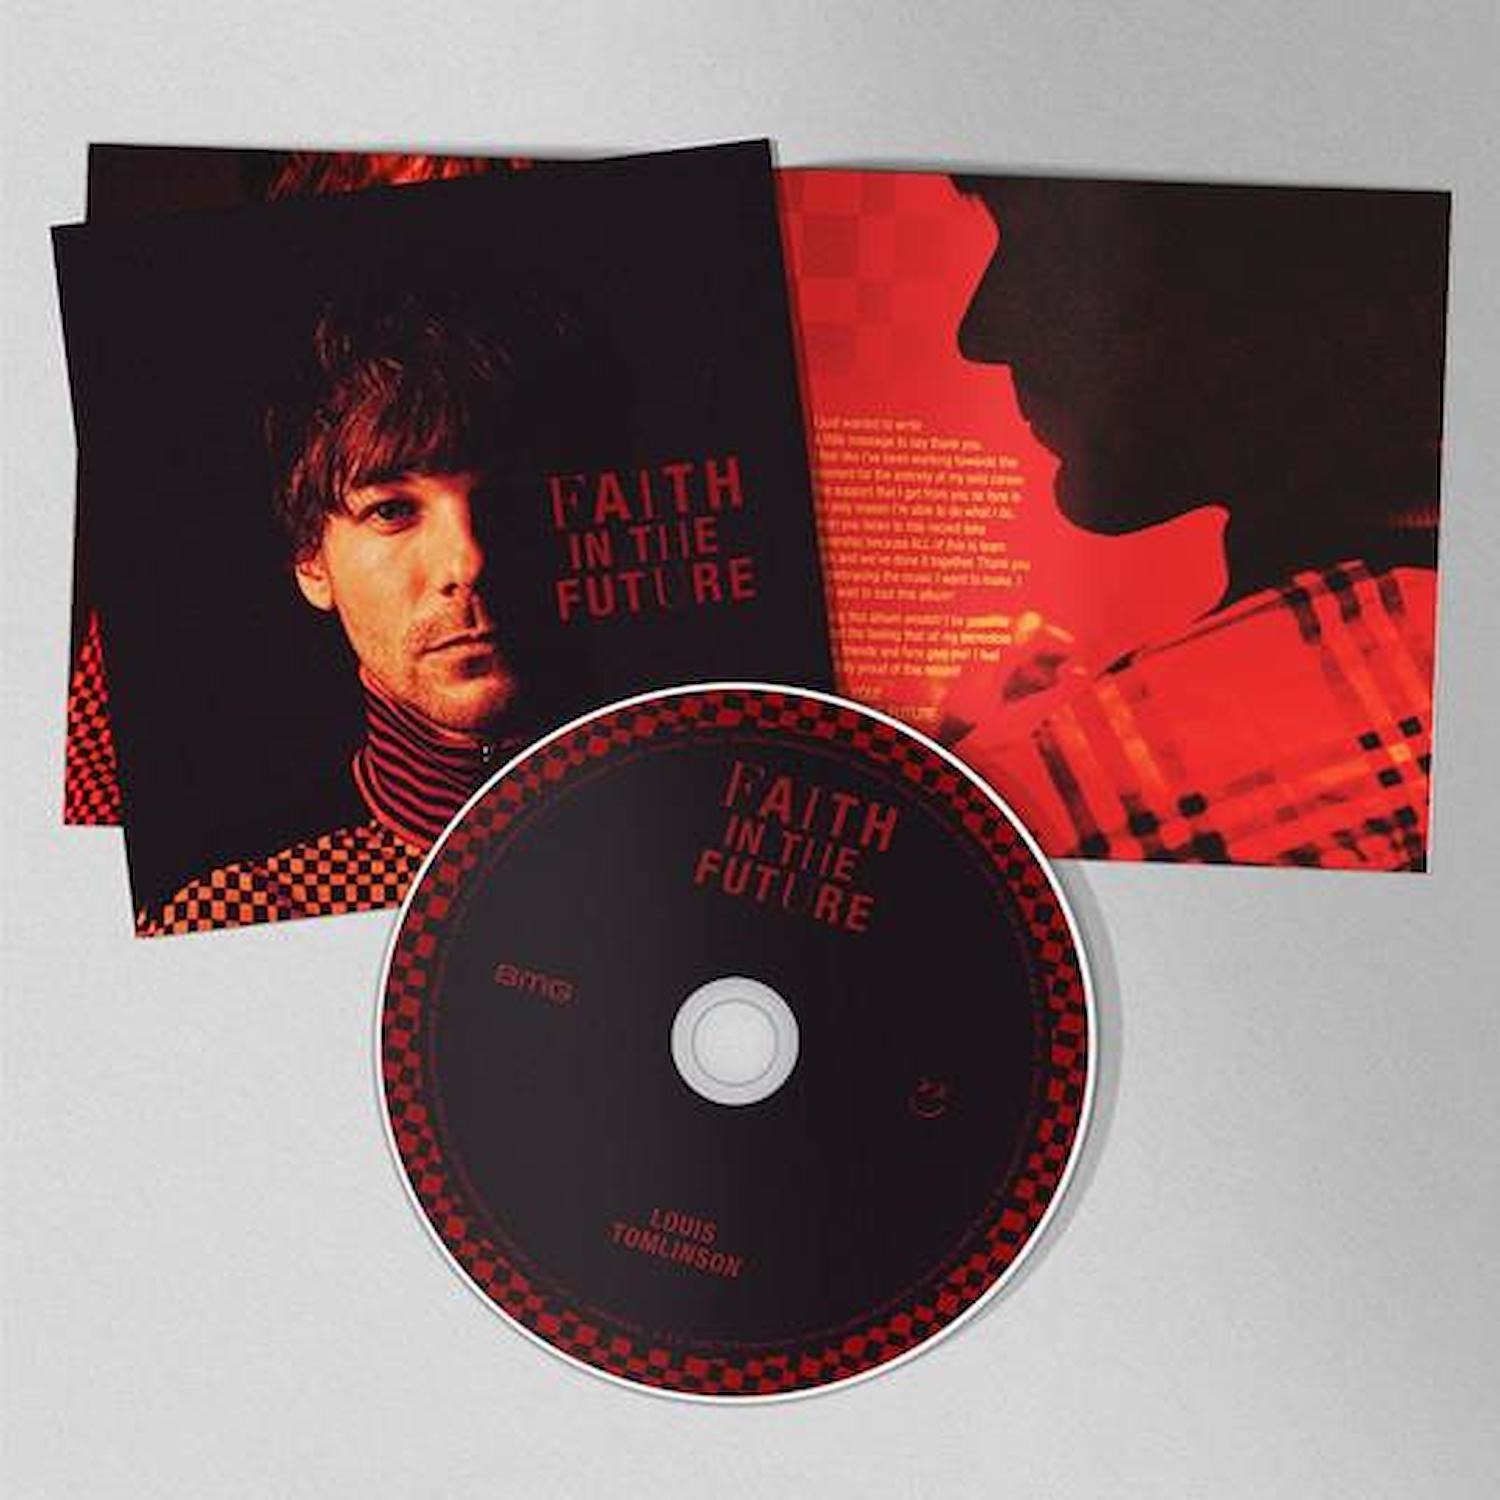 Immagine per CD Faith in the future da DIMOStore